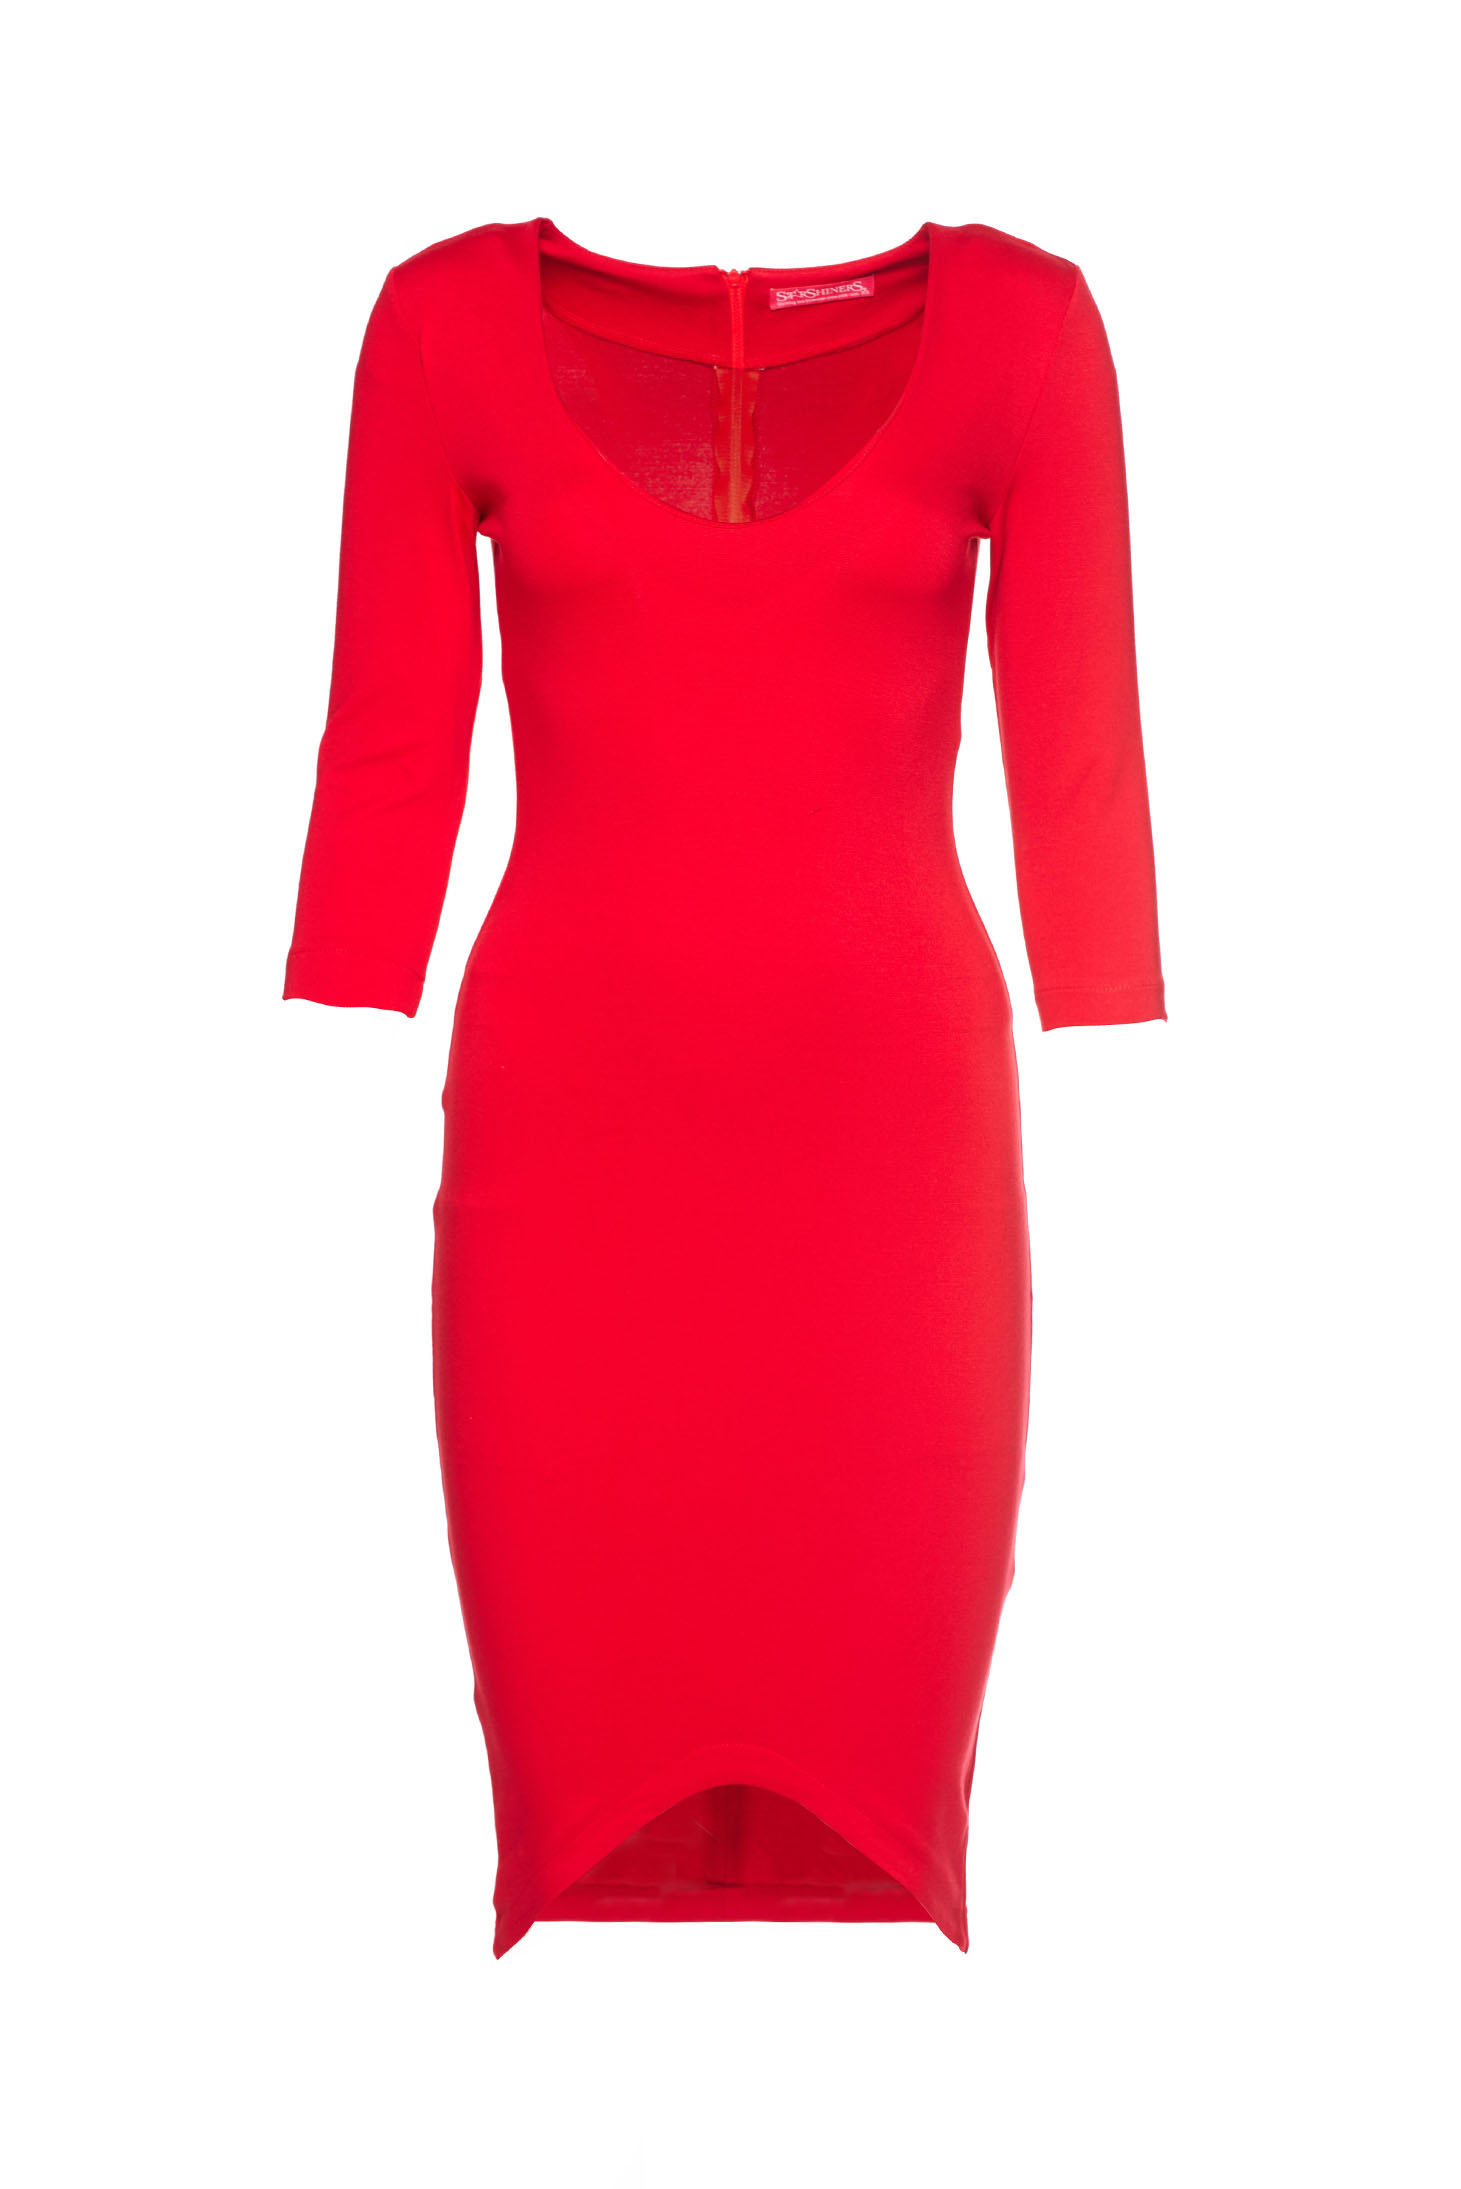 StarShinerS Sensual Dream Red Dress